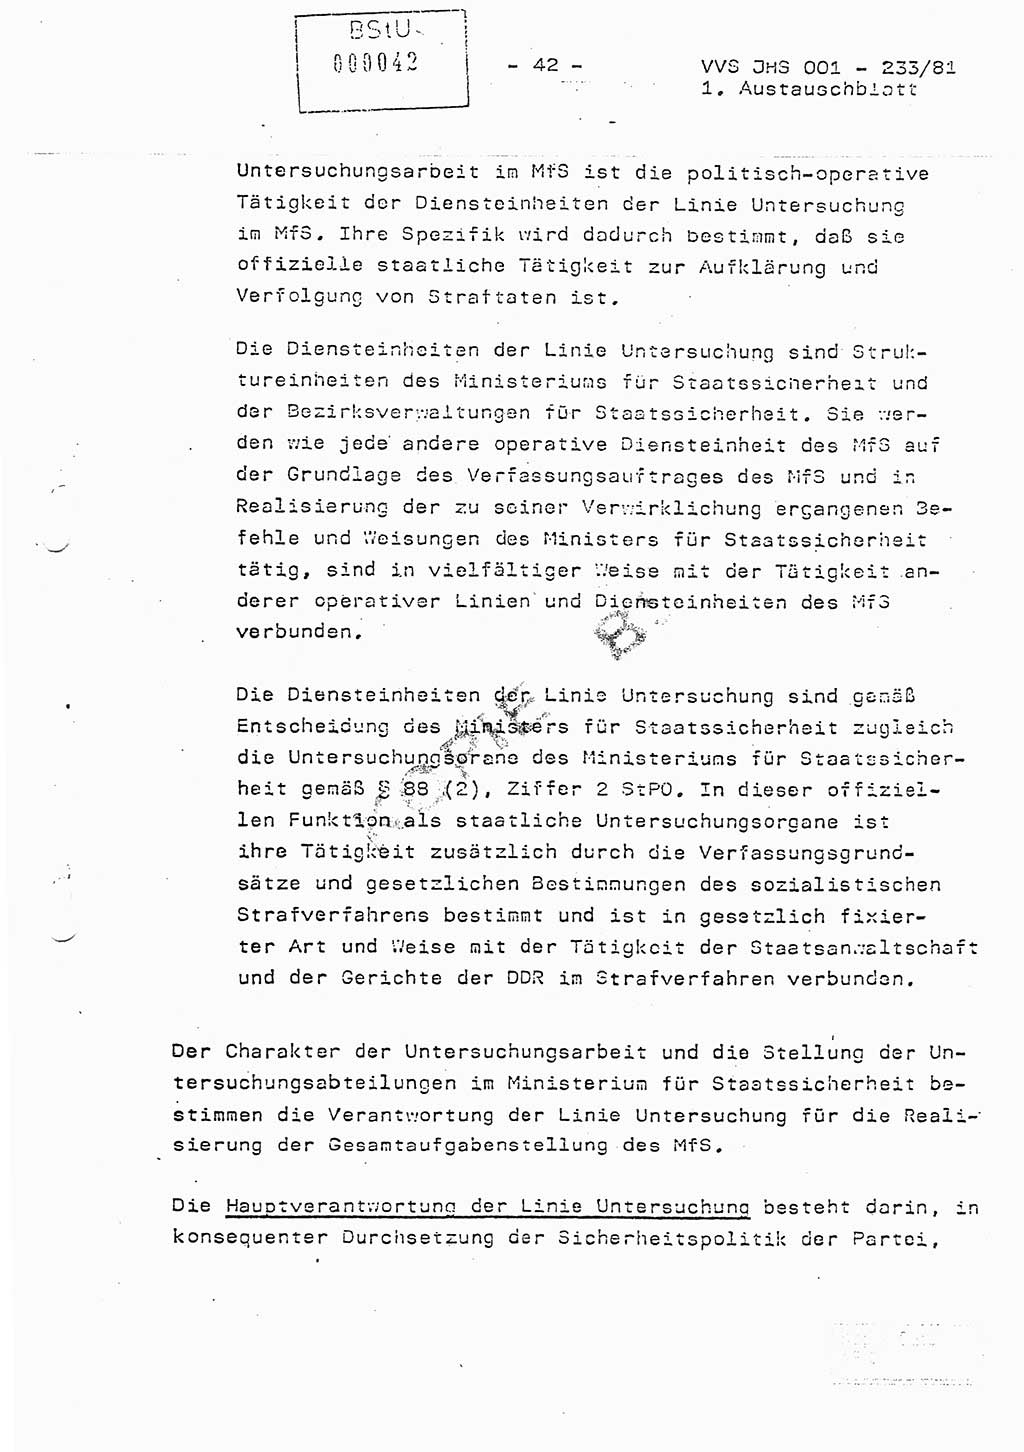 Dissertation Oberstleutnant Horst Zank (JHS), Oberstleutnant Dr. Karl-Heinz Knoblauch (JHS), Oberstleutnant Gustav-Adolf Kowalewski (HA Ⅸ), Oberstleutnant Wolfgang Plötner (HA Ⅸ), Ministerium für Staatssicherheit (MfS) [Deutsche Demokratische Republik (DDR)], Juristische Hochschule (JHS), Vertrauliche Verschlußsache (VVS) o001-233/81, Potsdam 1981, Blatt 42 (Diss. MfS DDR JHS VVS o001-233/81 1981, Bl. 42)